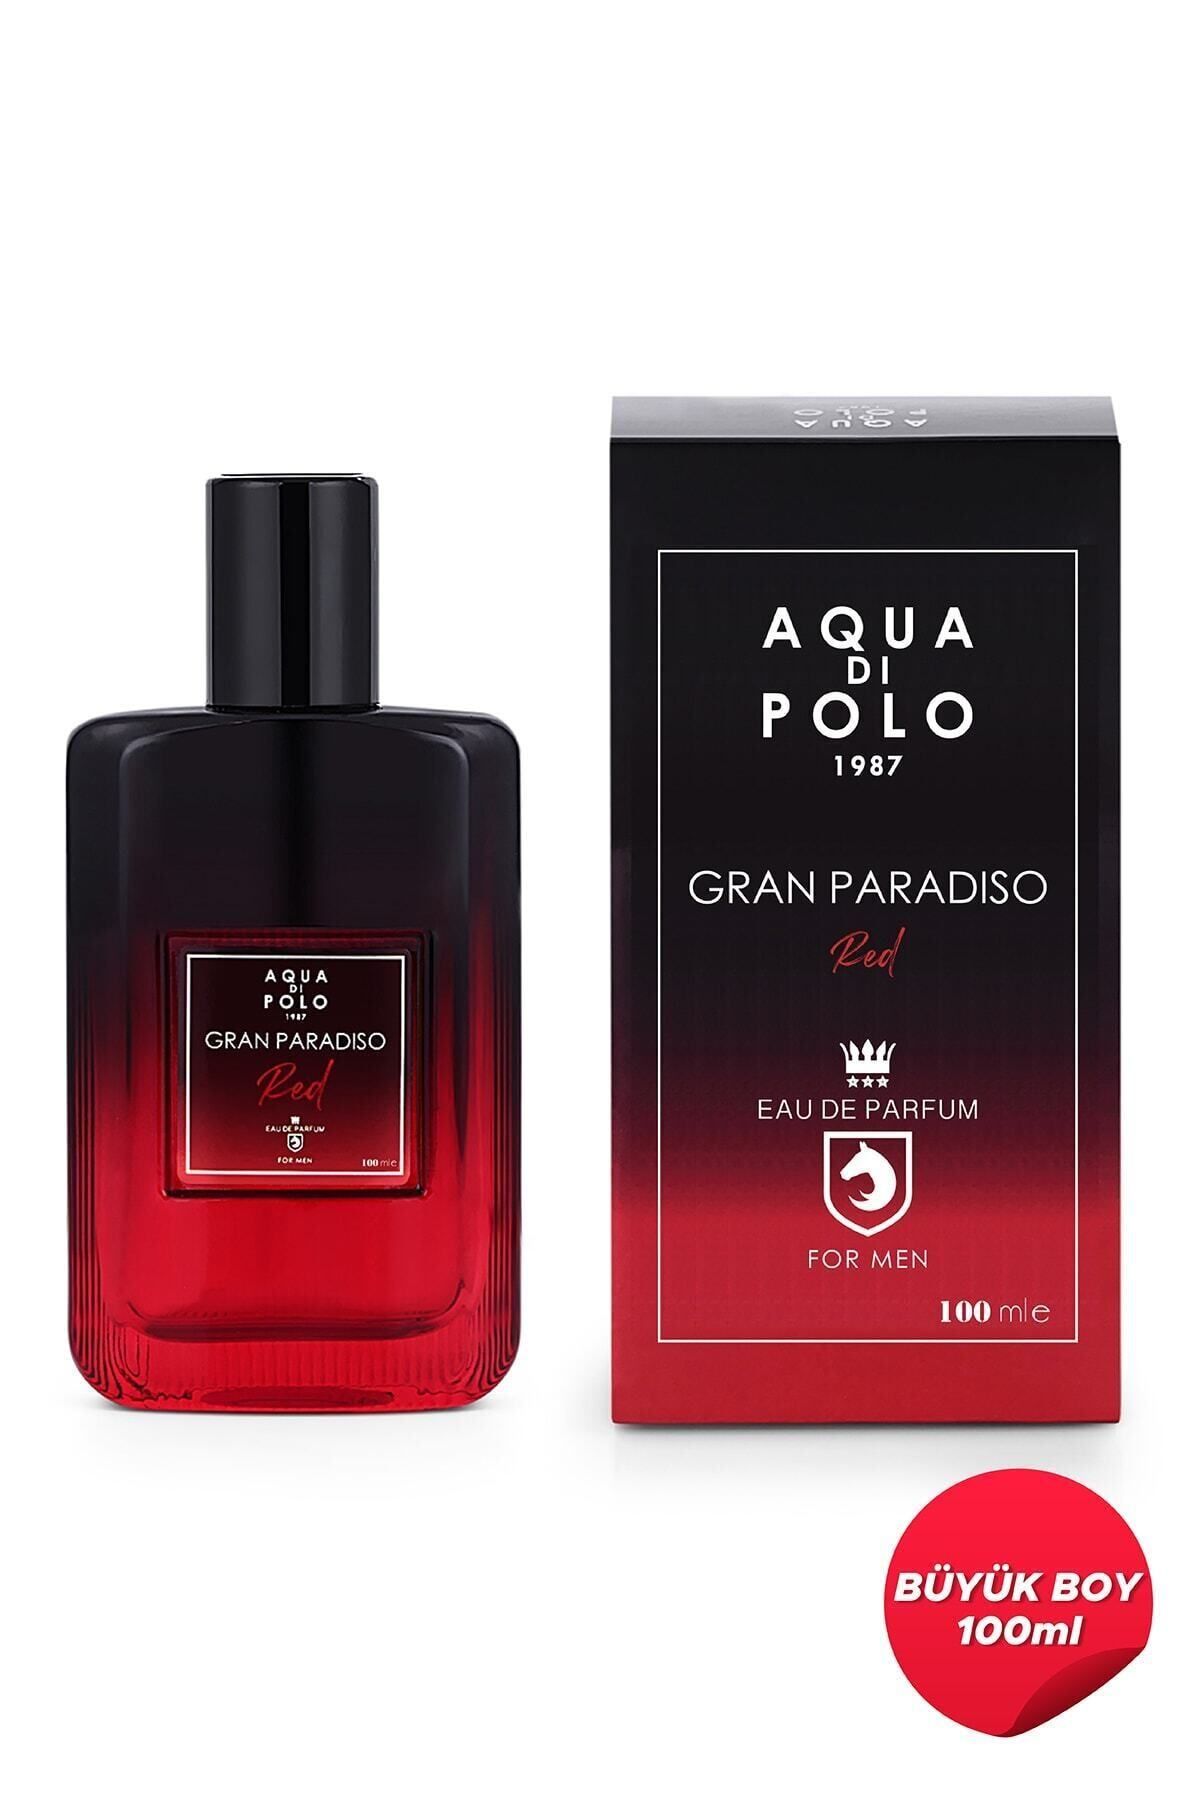 Aqua Di Polo 1987 Red Erkek Parfüm 100 ml Edp Apcn001803.